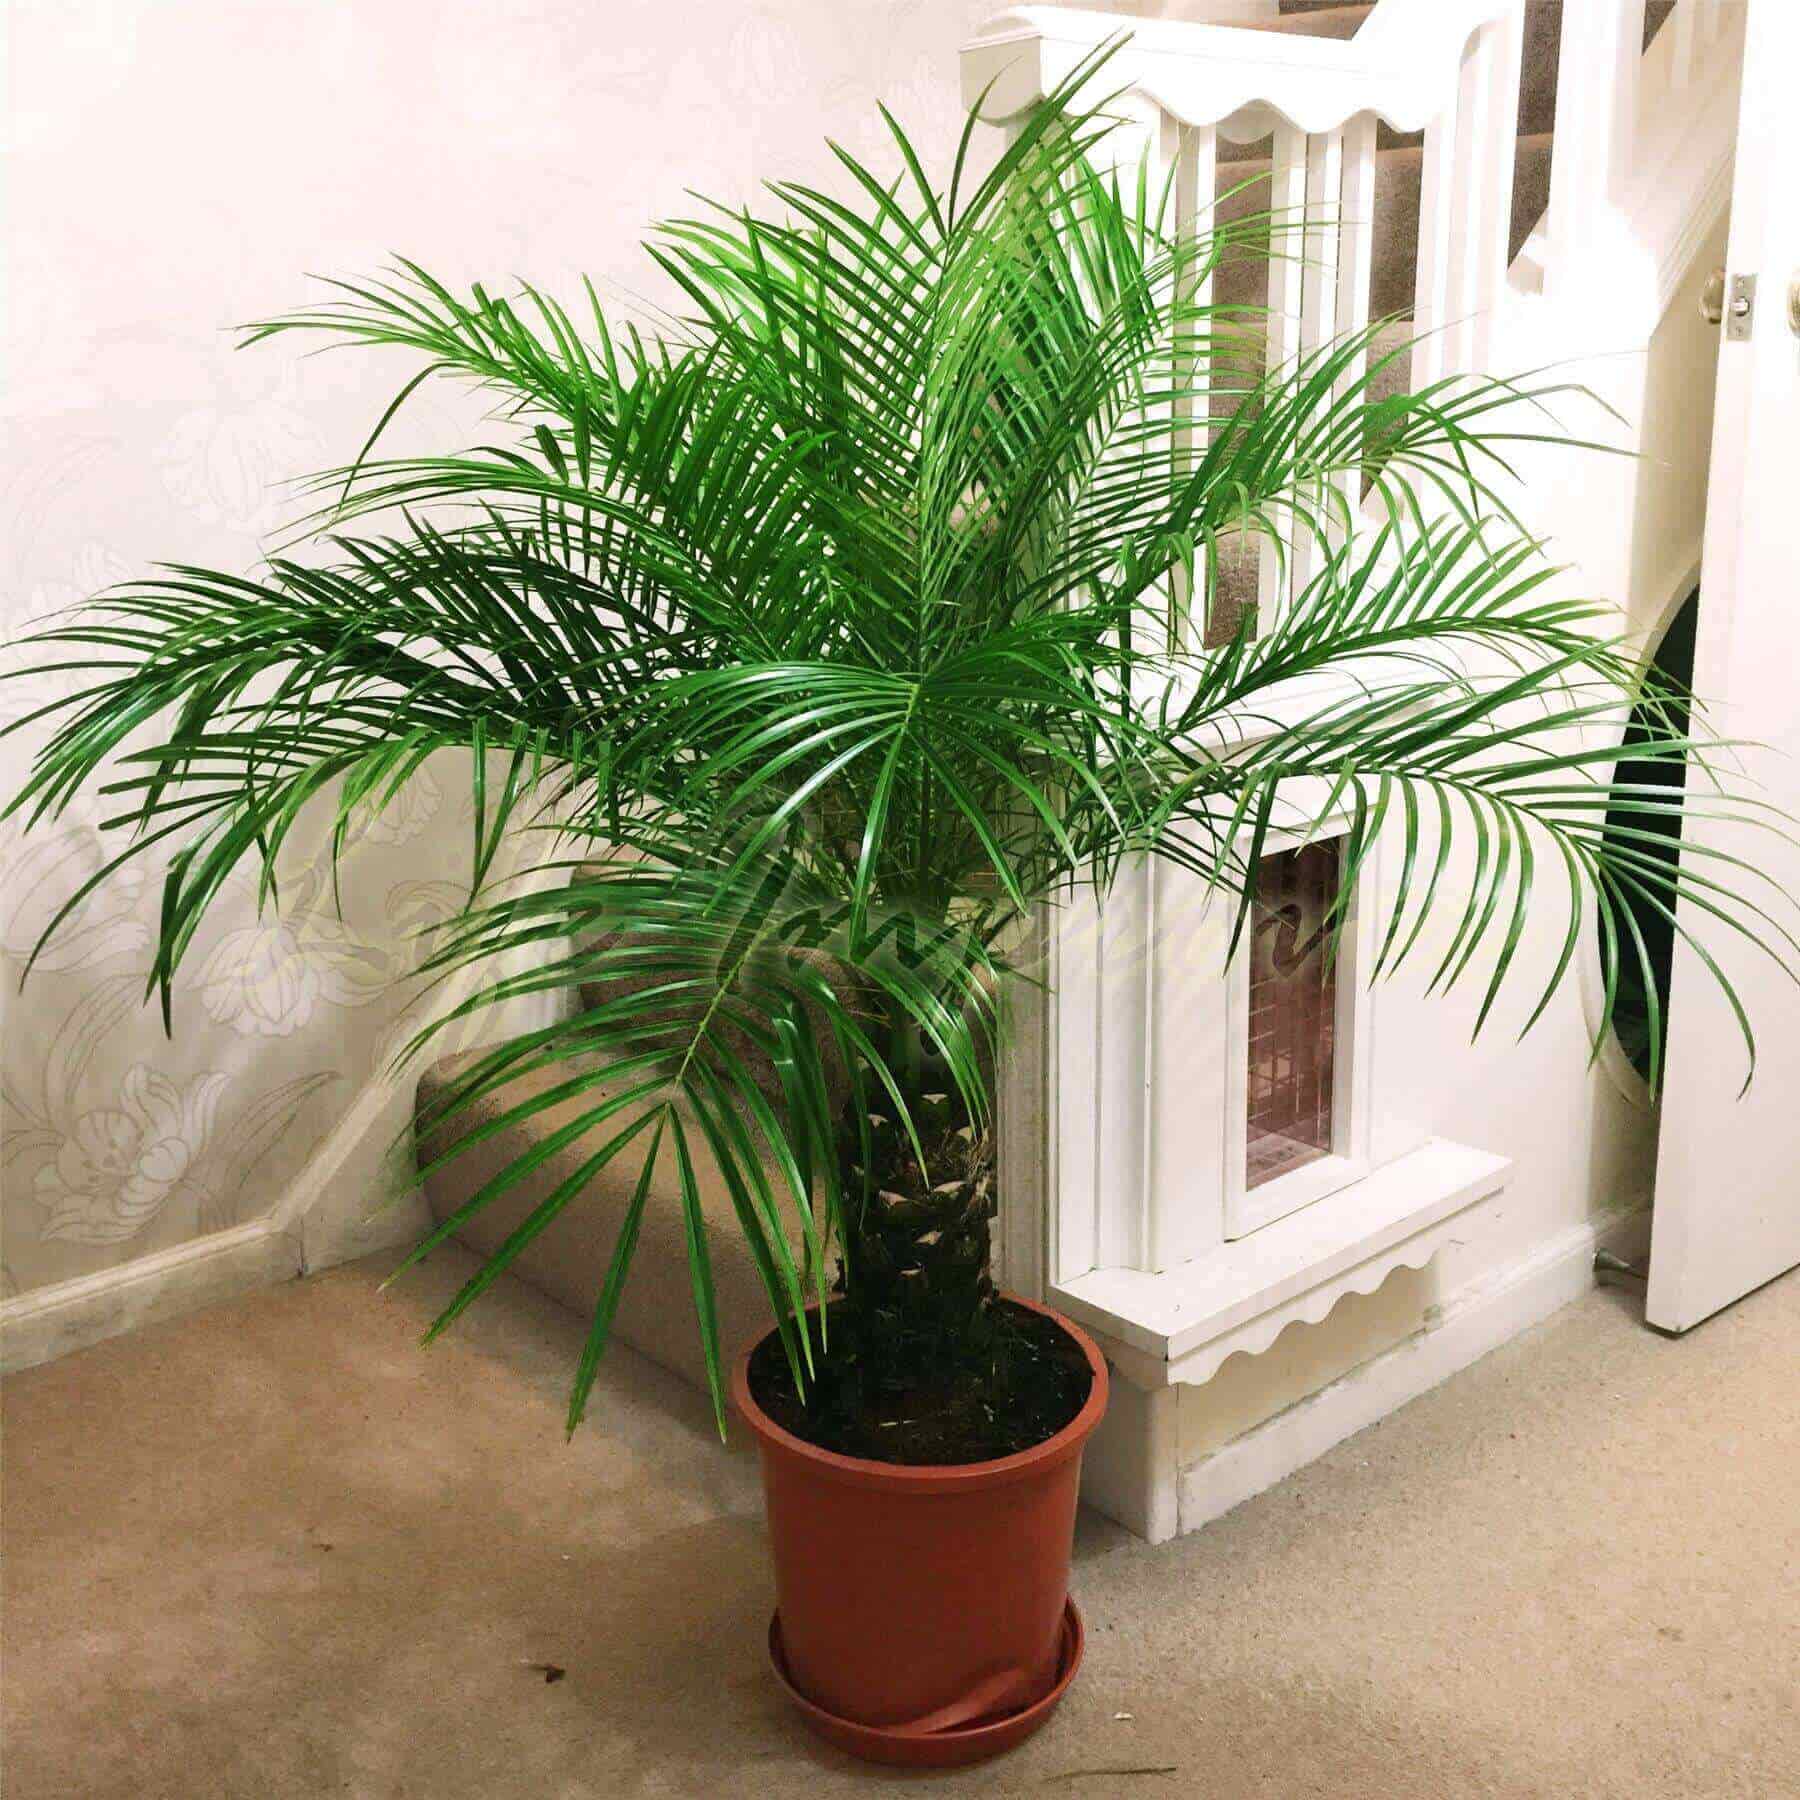 Dwarf date palm 